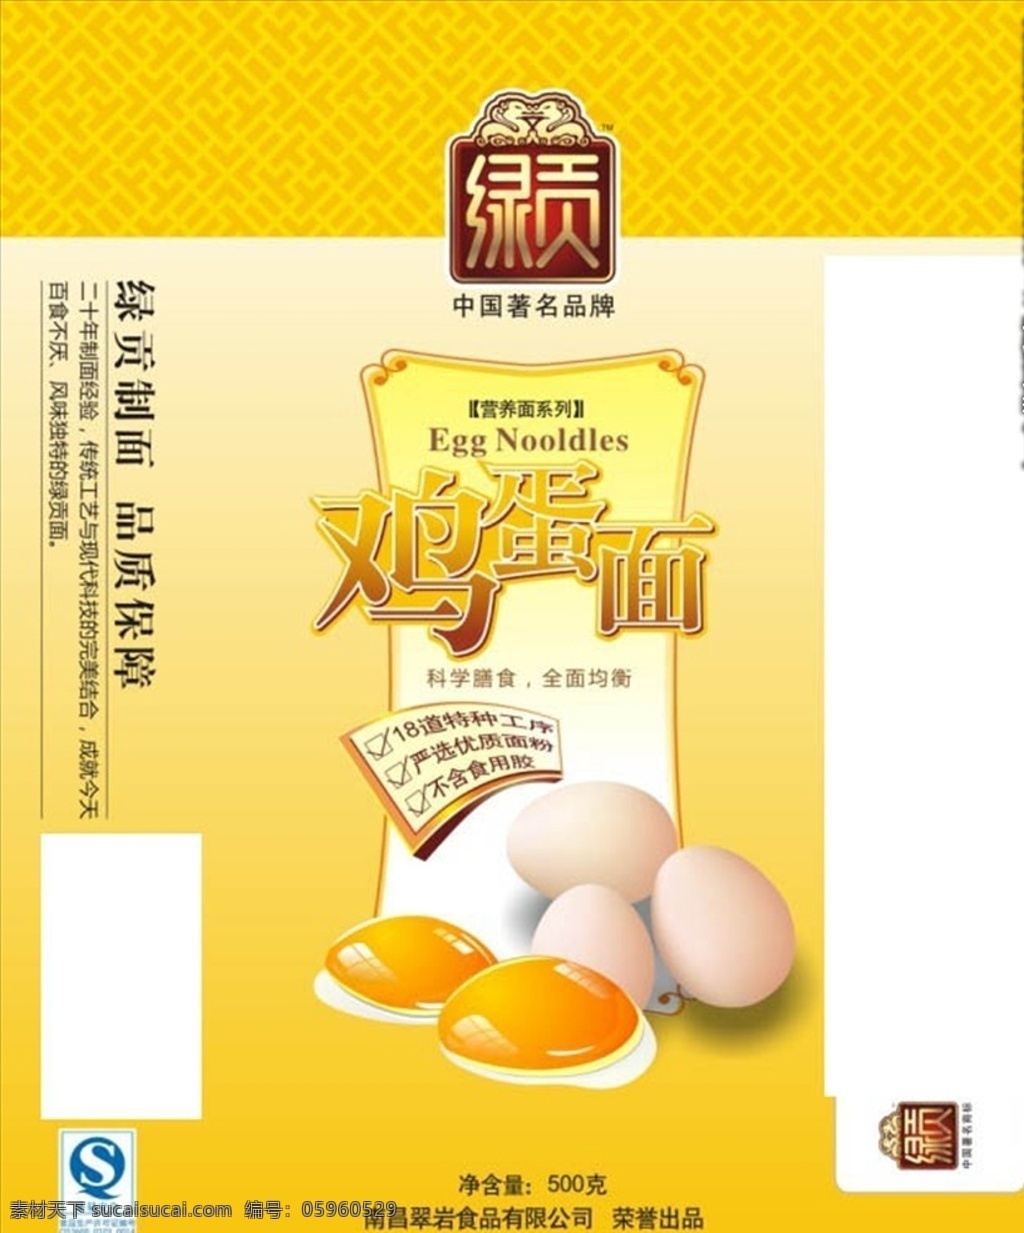 鸡蛋面包装 平面展开图 鸡蛋面 面包装 鸡蛋包装 纸包装 鸡蛋面纸 包装设计